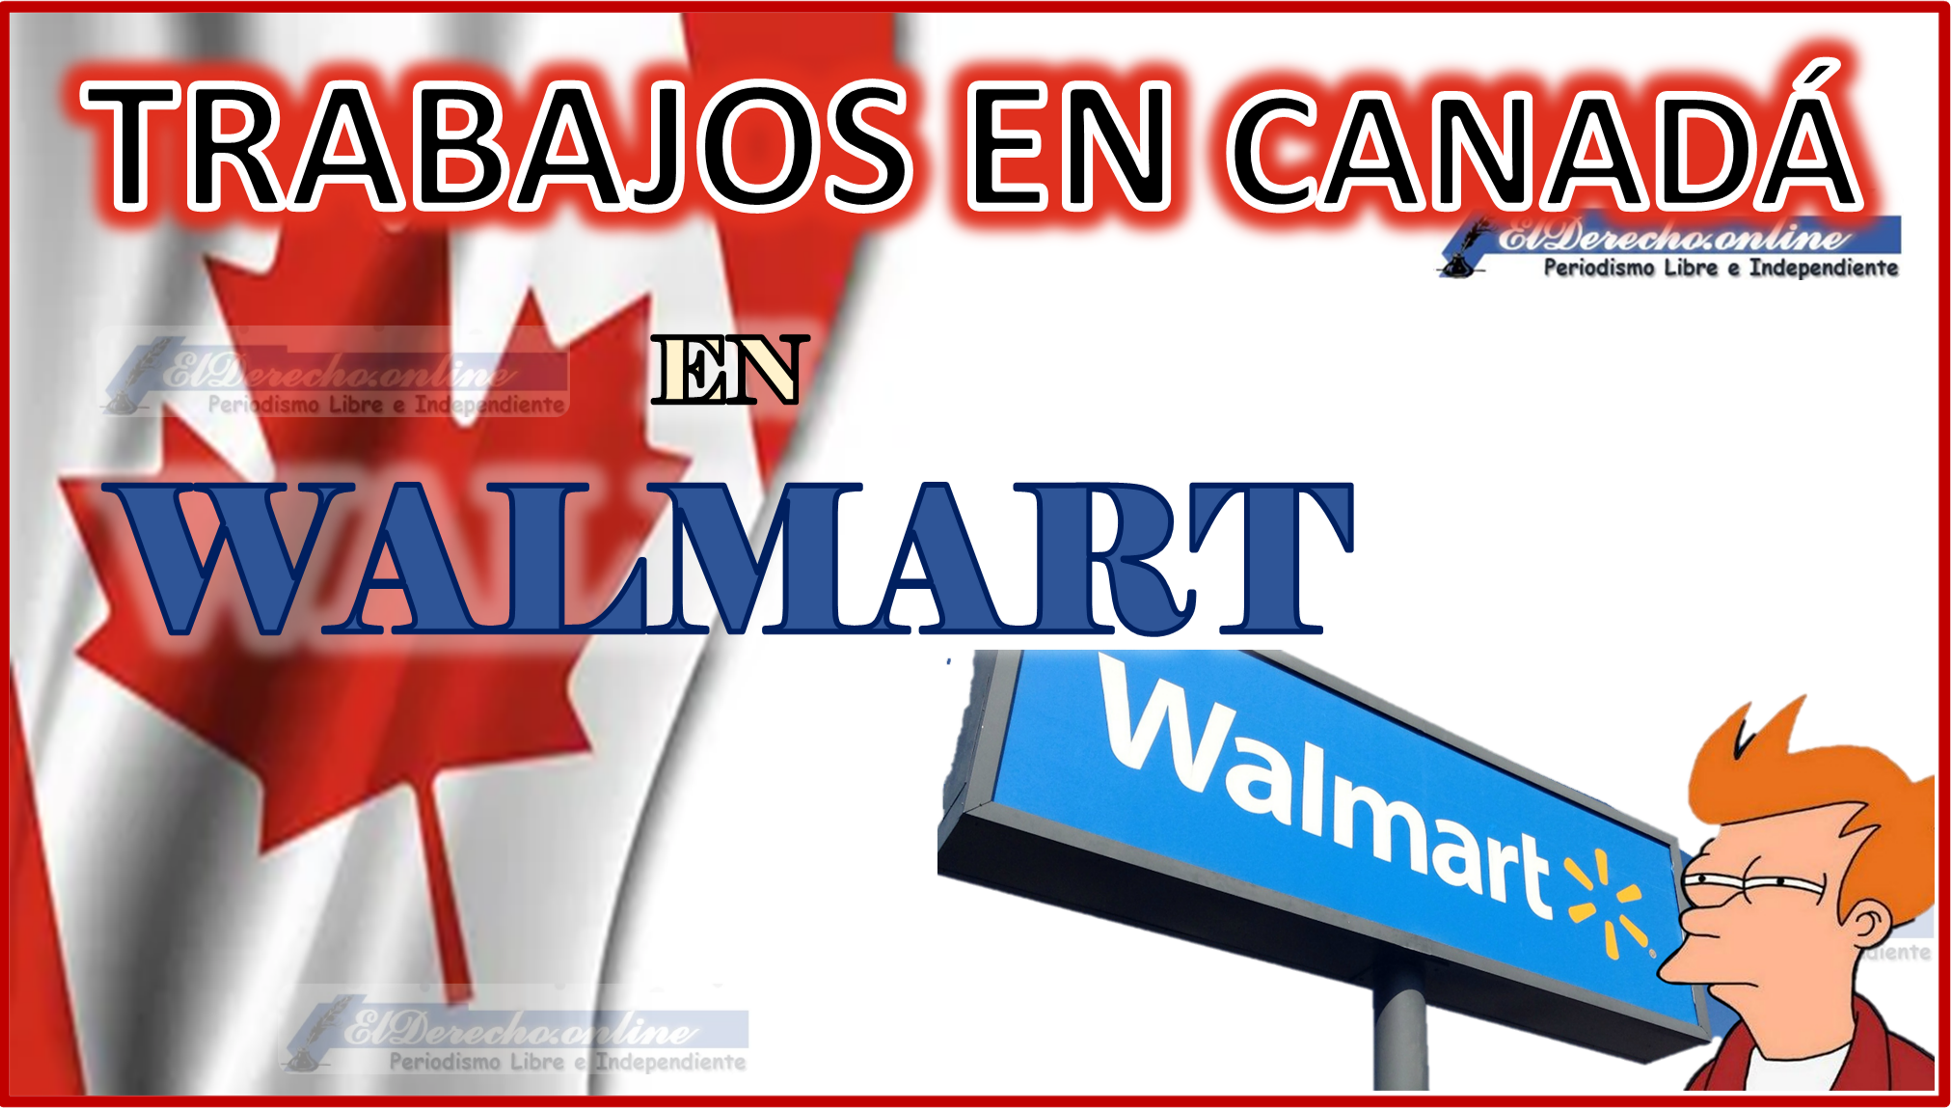 Trabajos en Walmart Canadá 2023 - 2024